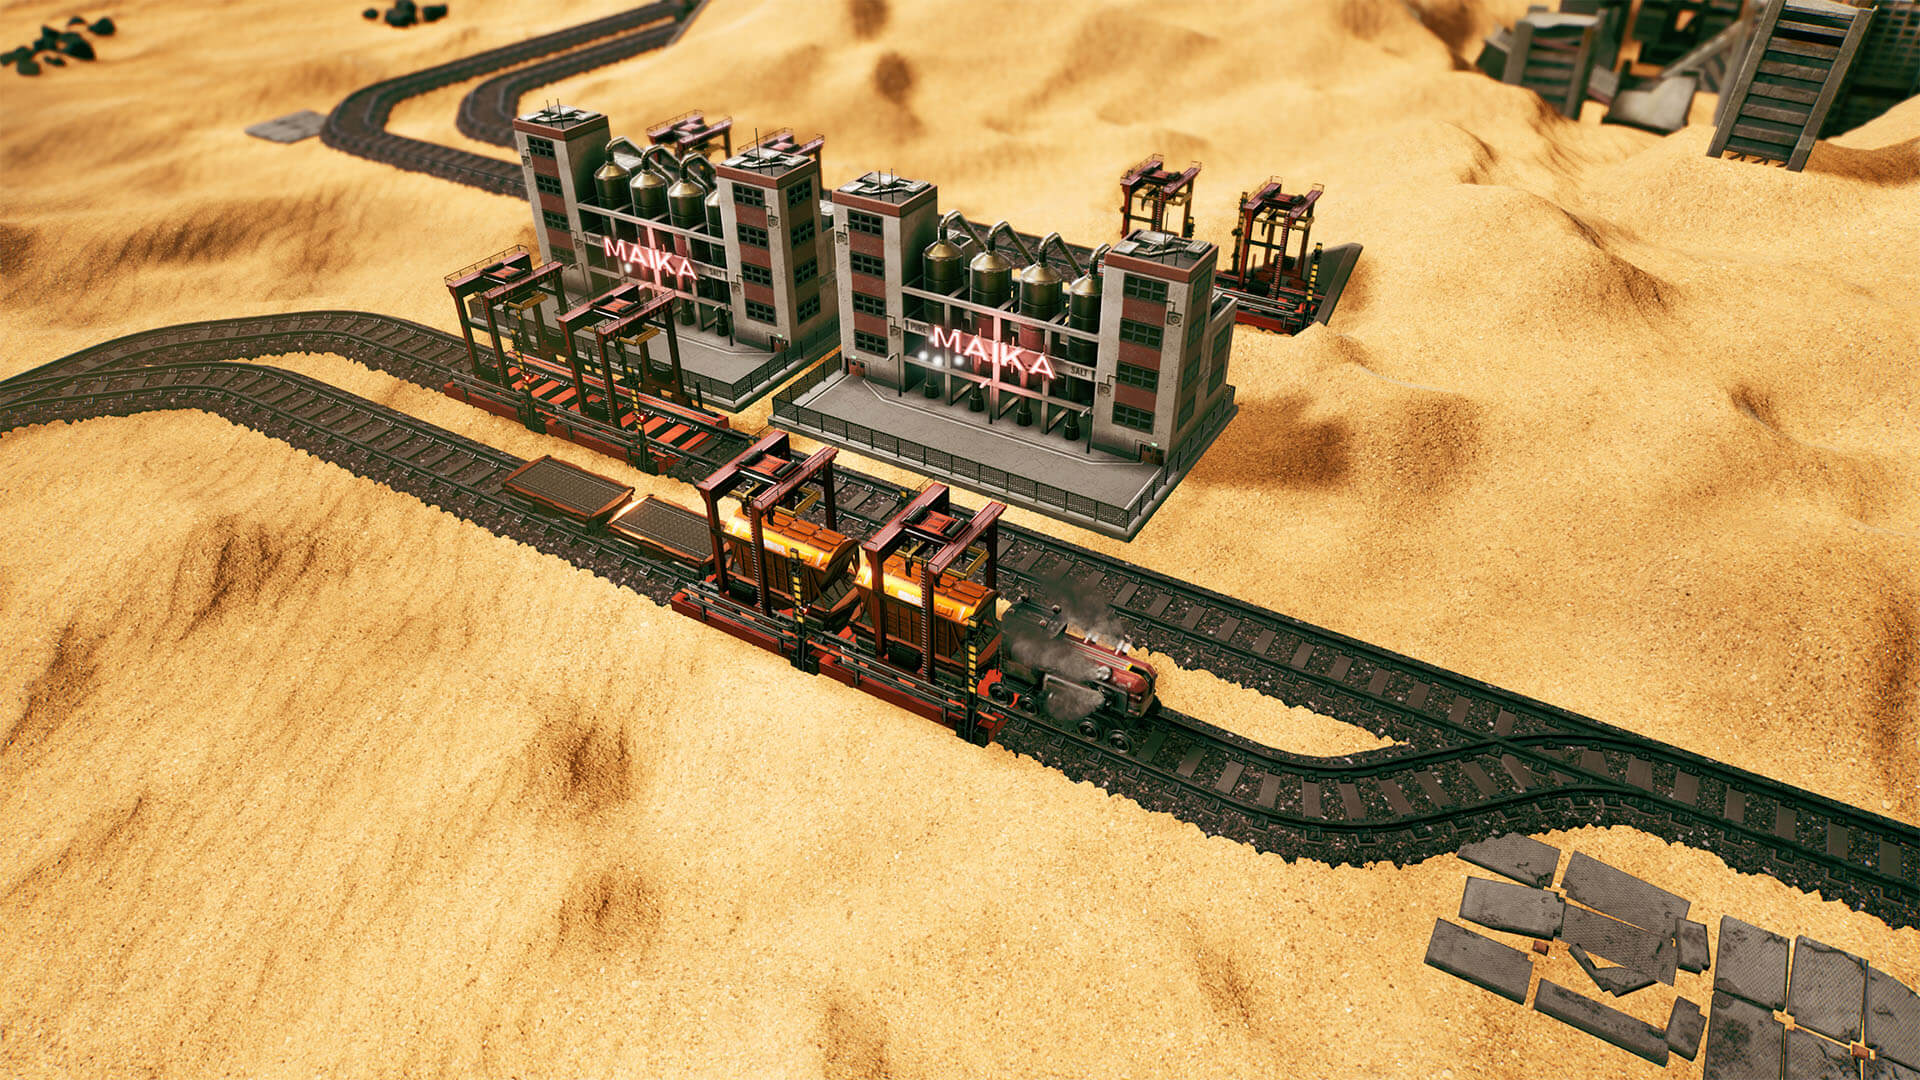 鐵路運輸模擬遊戲《Railgrade》現已發售 首發72元